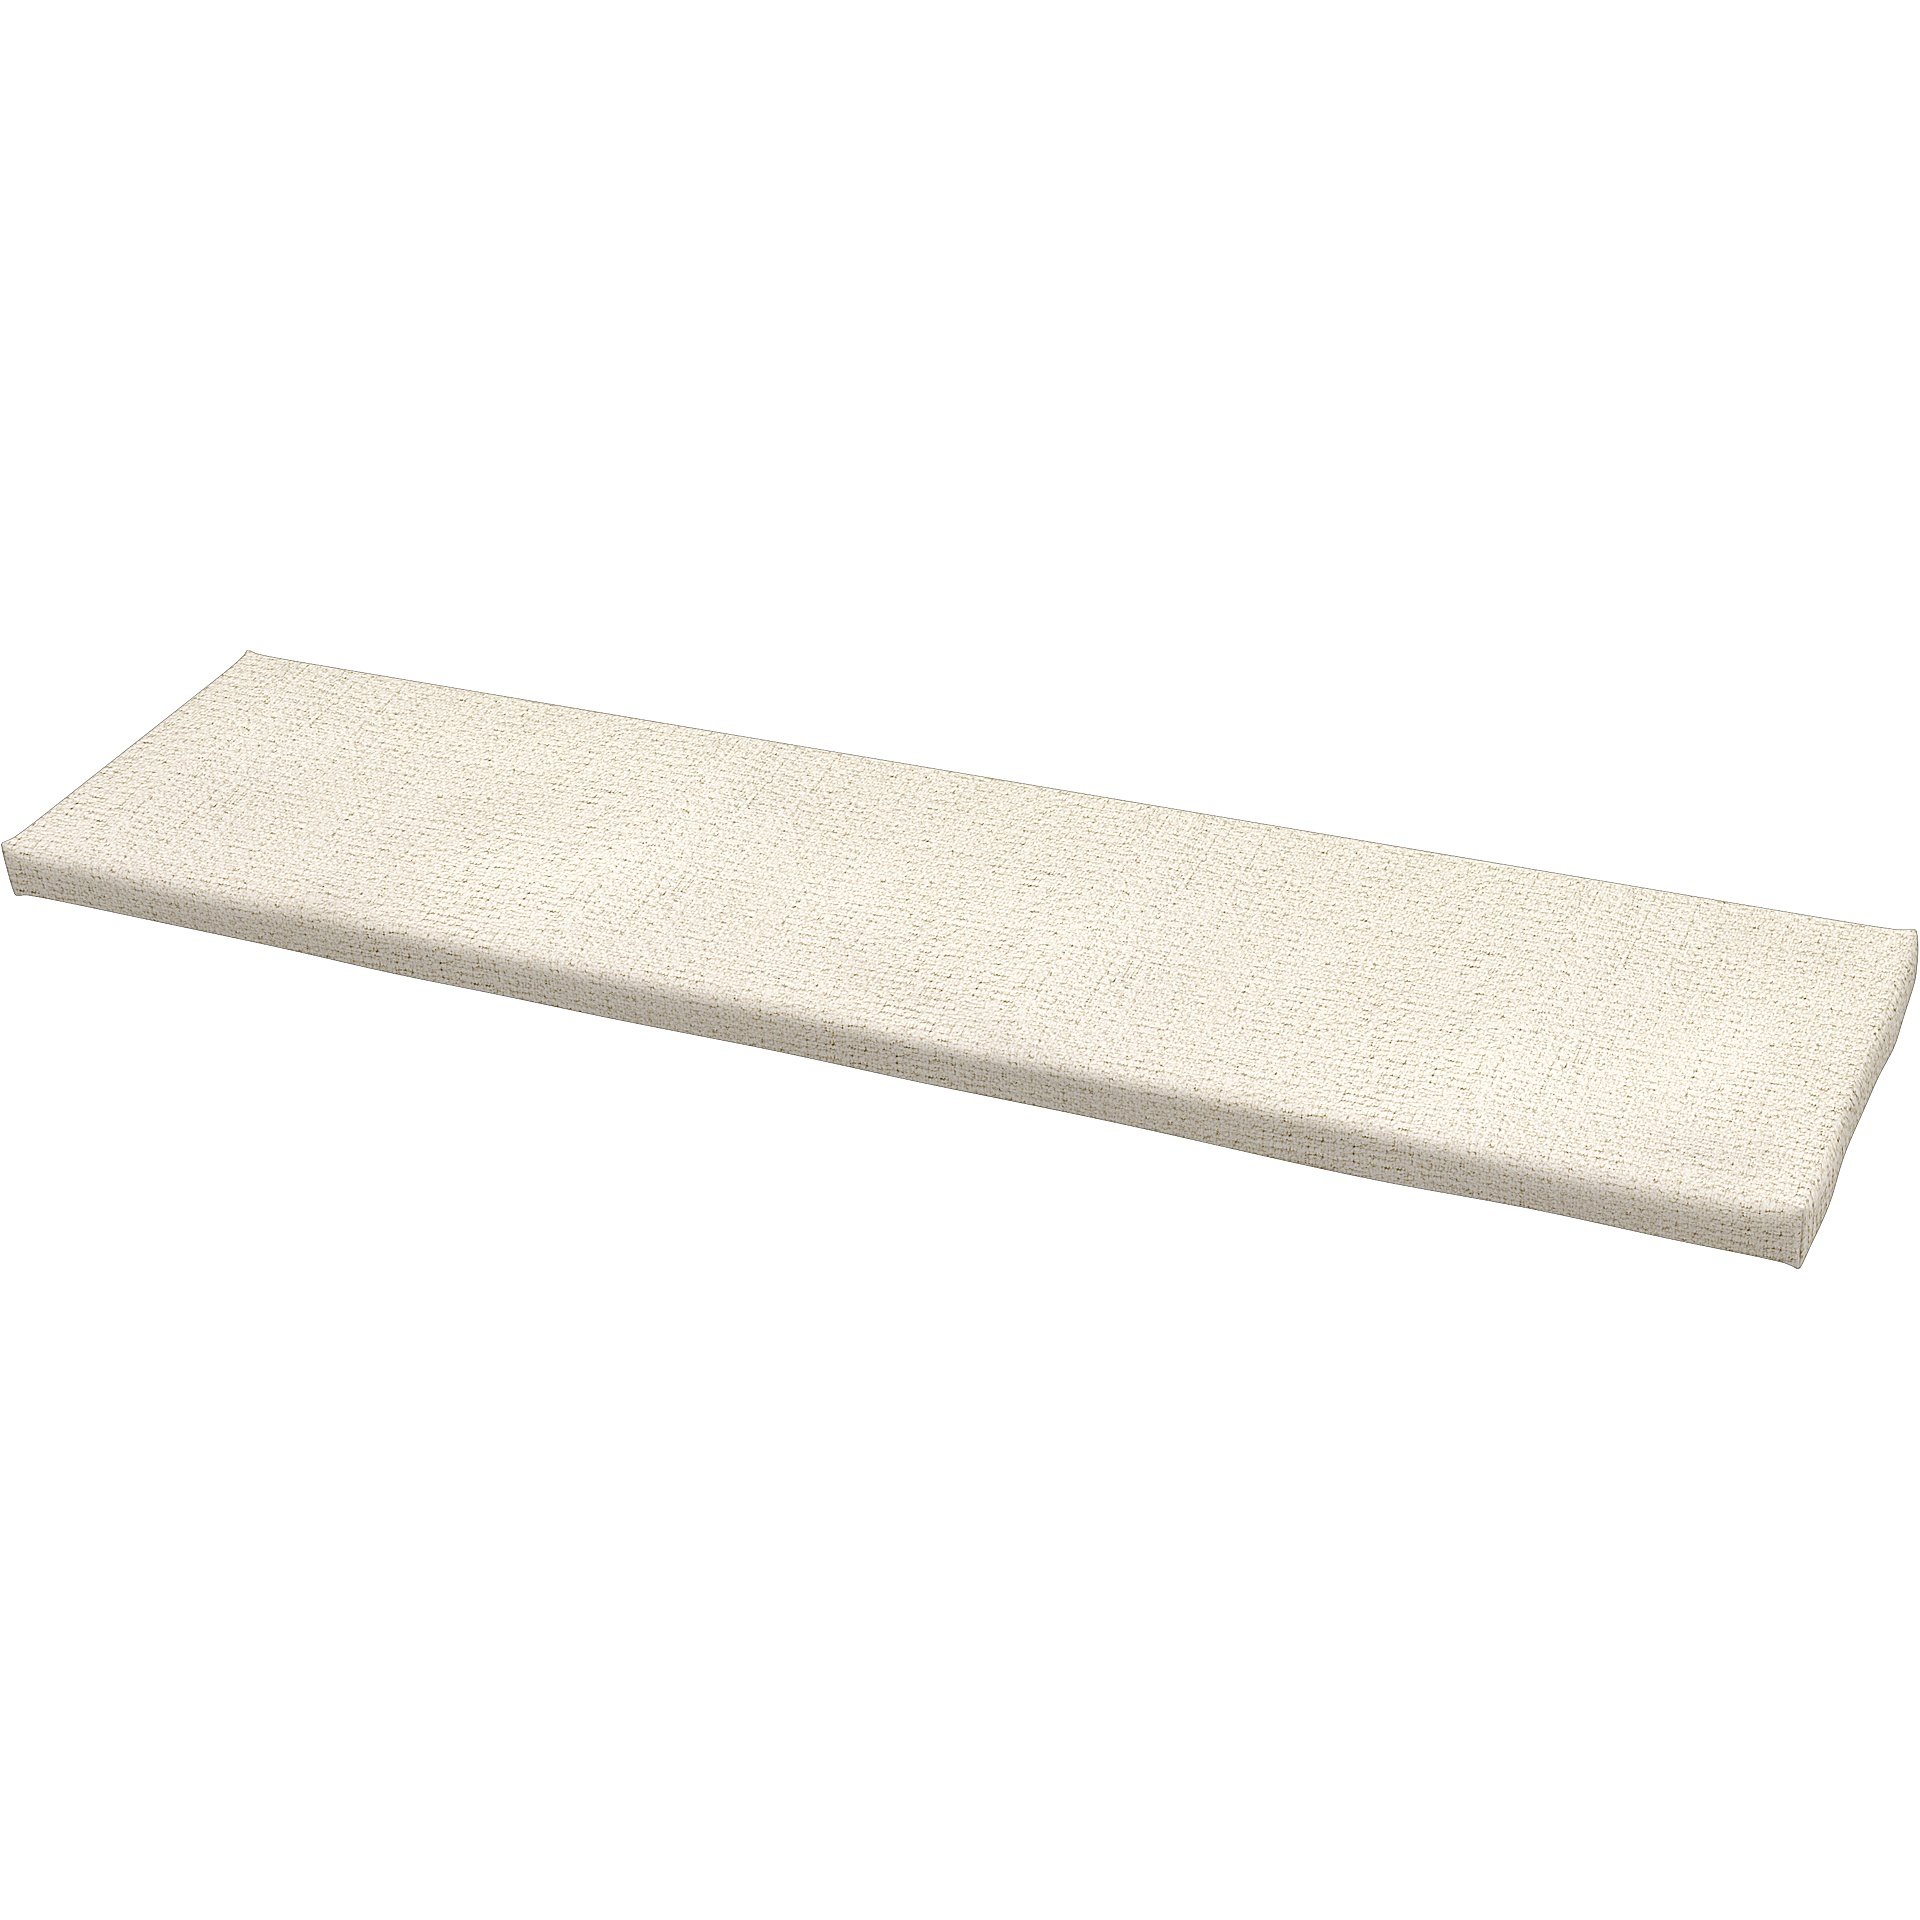 IKEA - Universal bench cushion cover 140x35x3,5 cm, Ecru, Boucle & Texture - Bemz